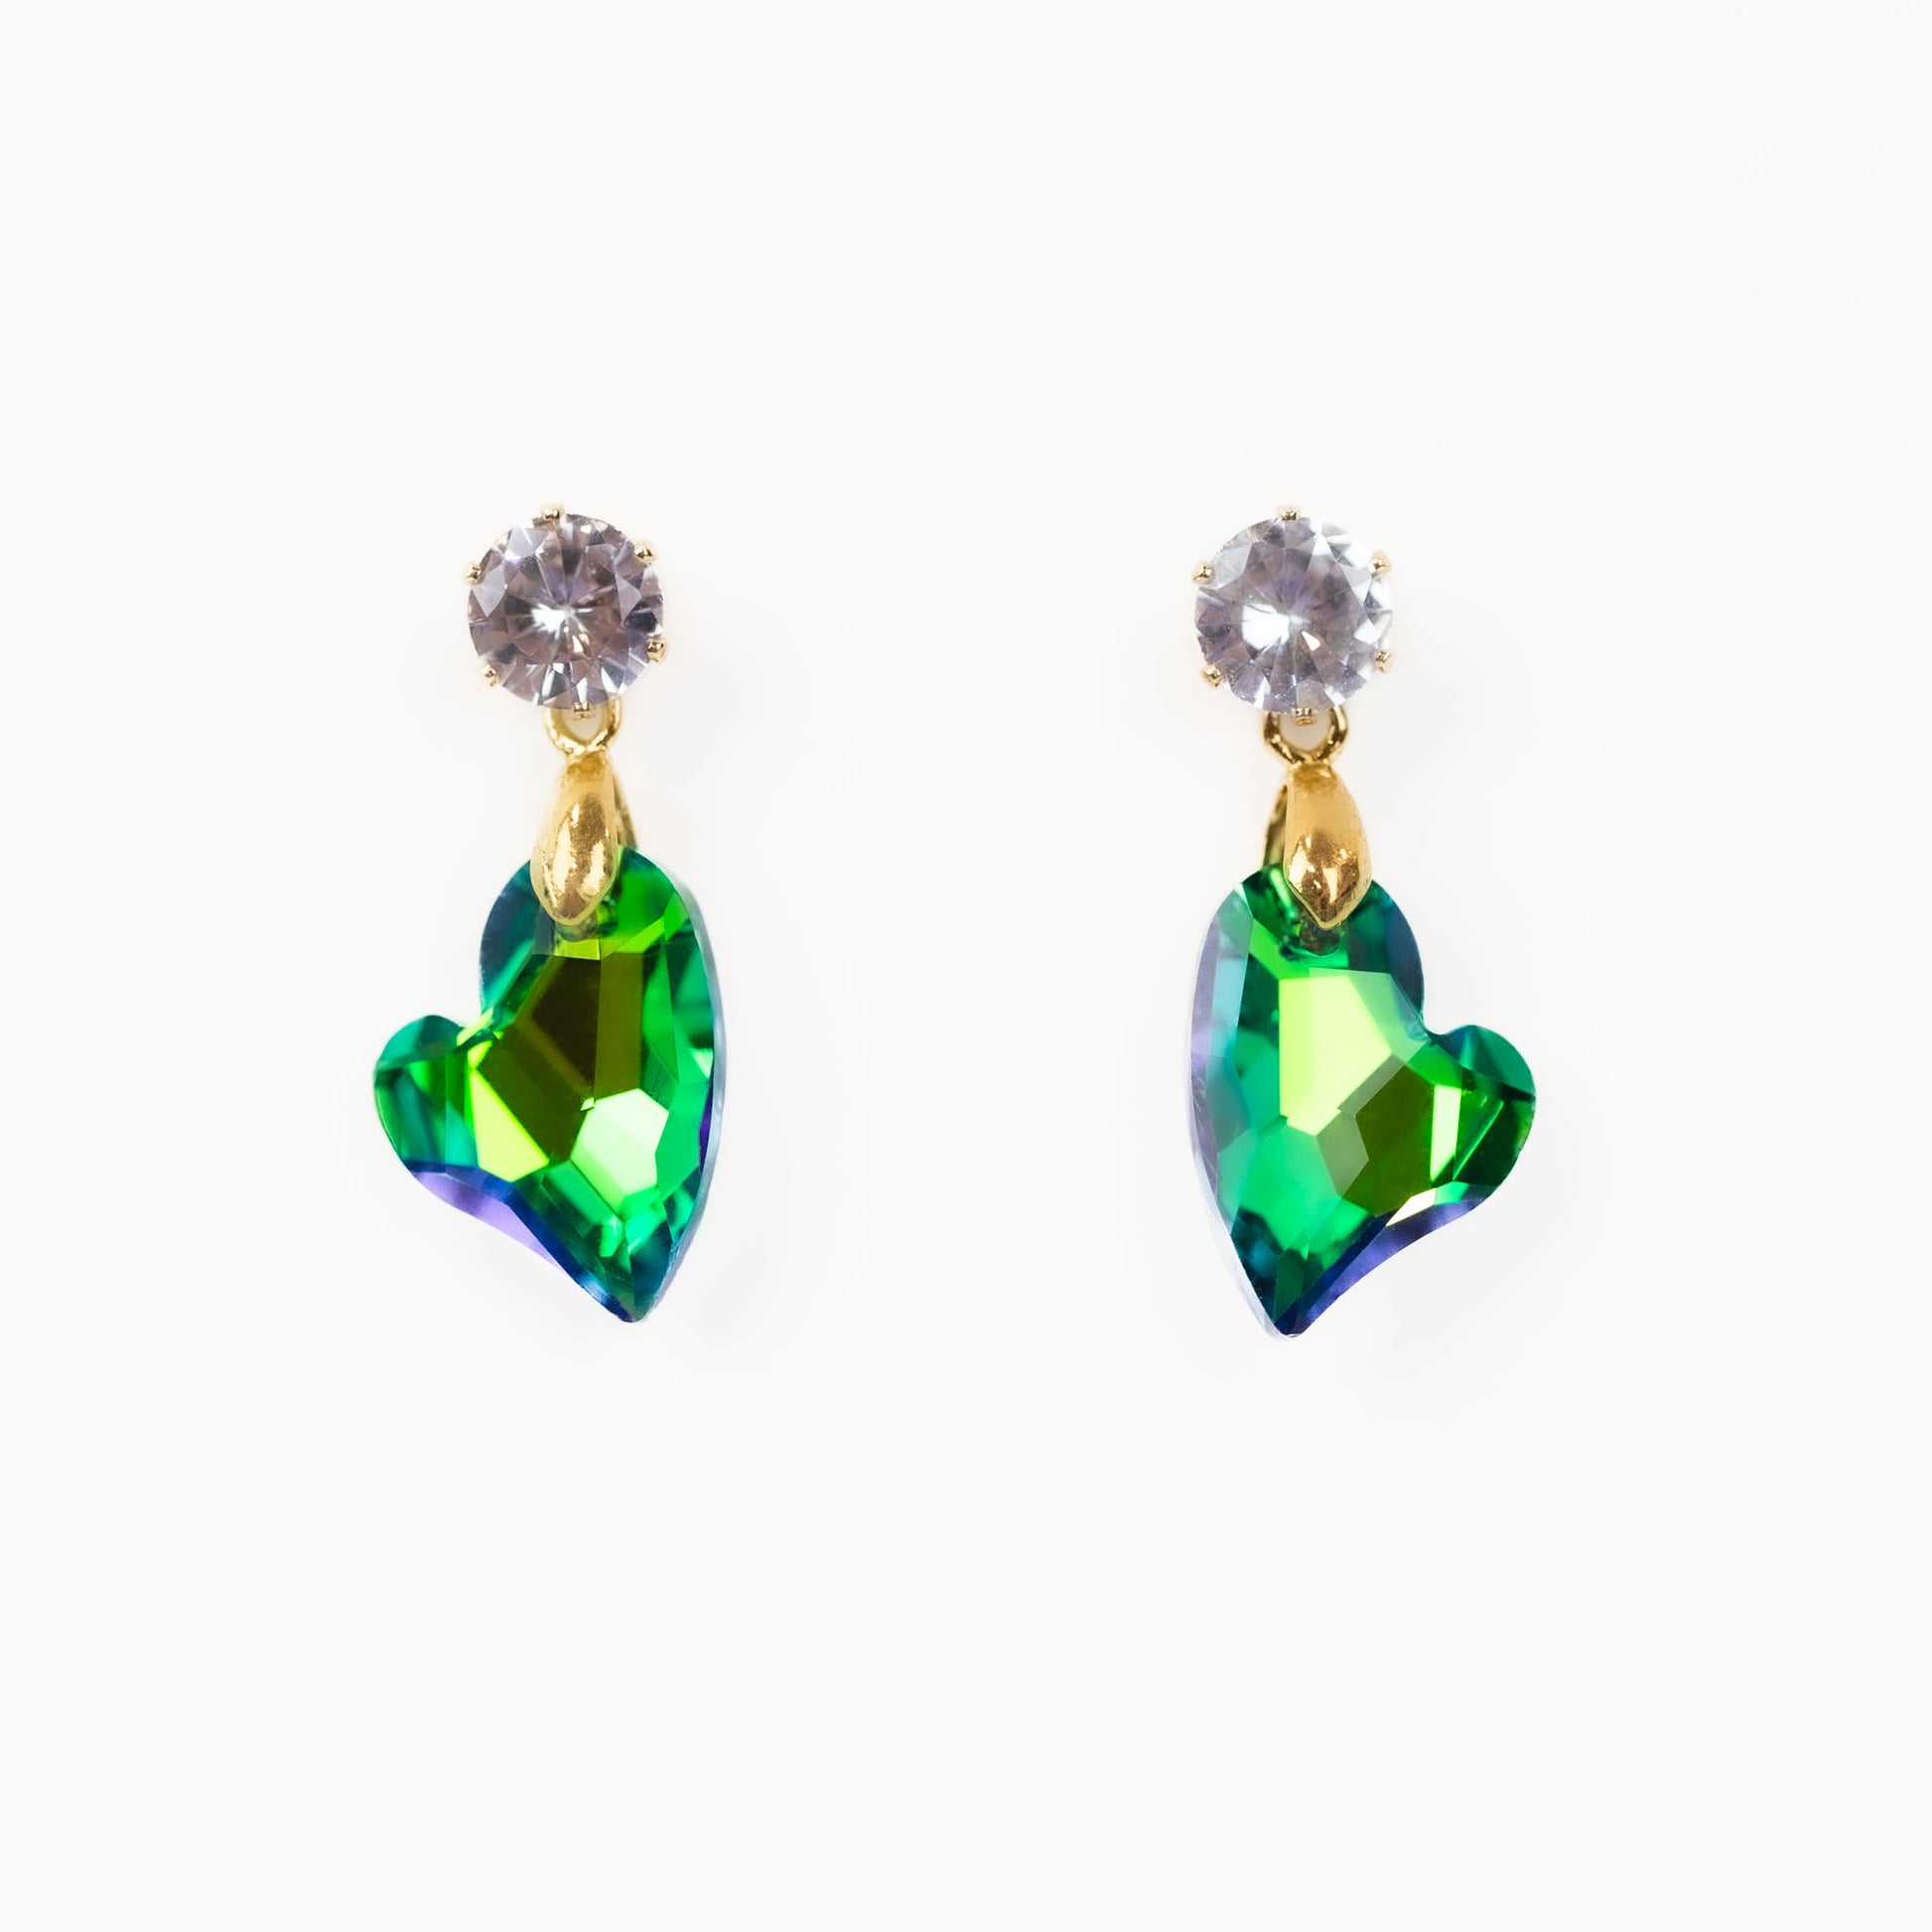 Cercei cu piatră strălucitoare în formă de inimă abstractă - Verde carismatic